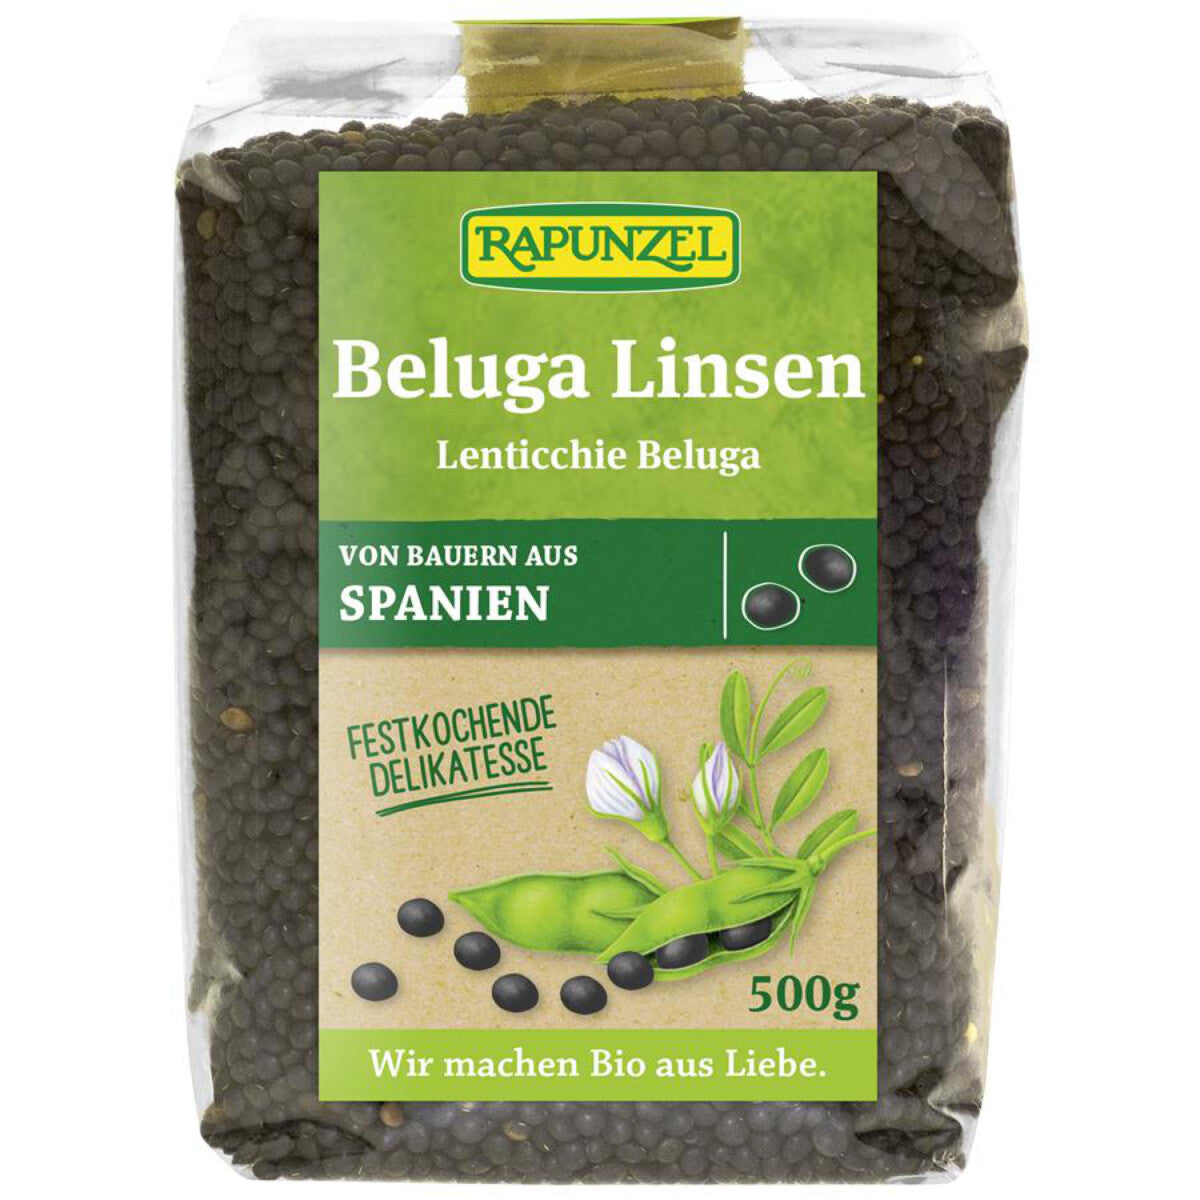 RAPUNZEL Beluga Linsen schwarz, klein – 500 g